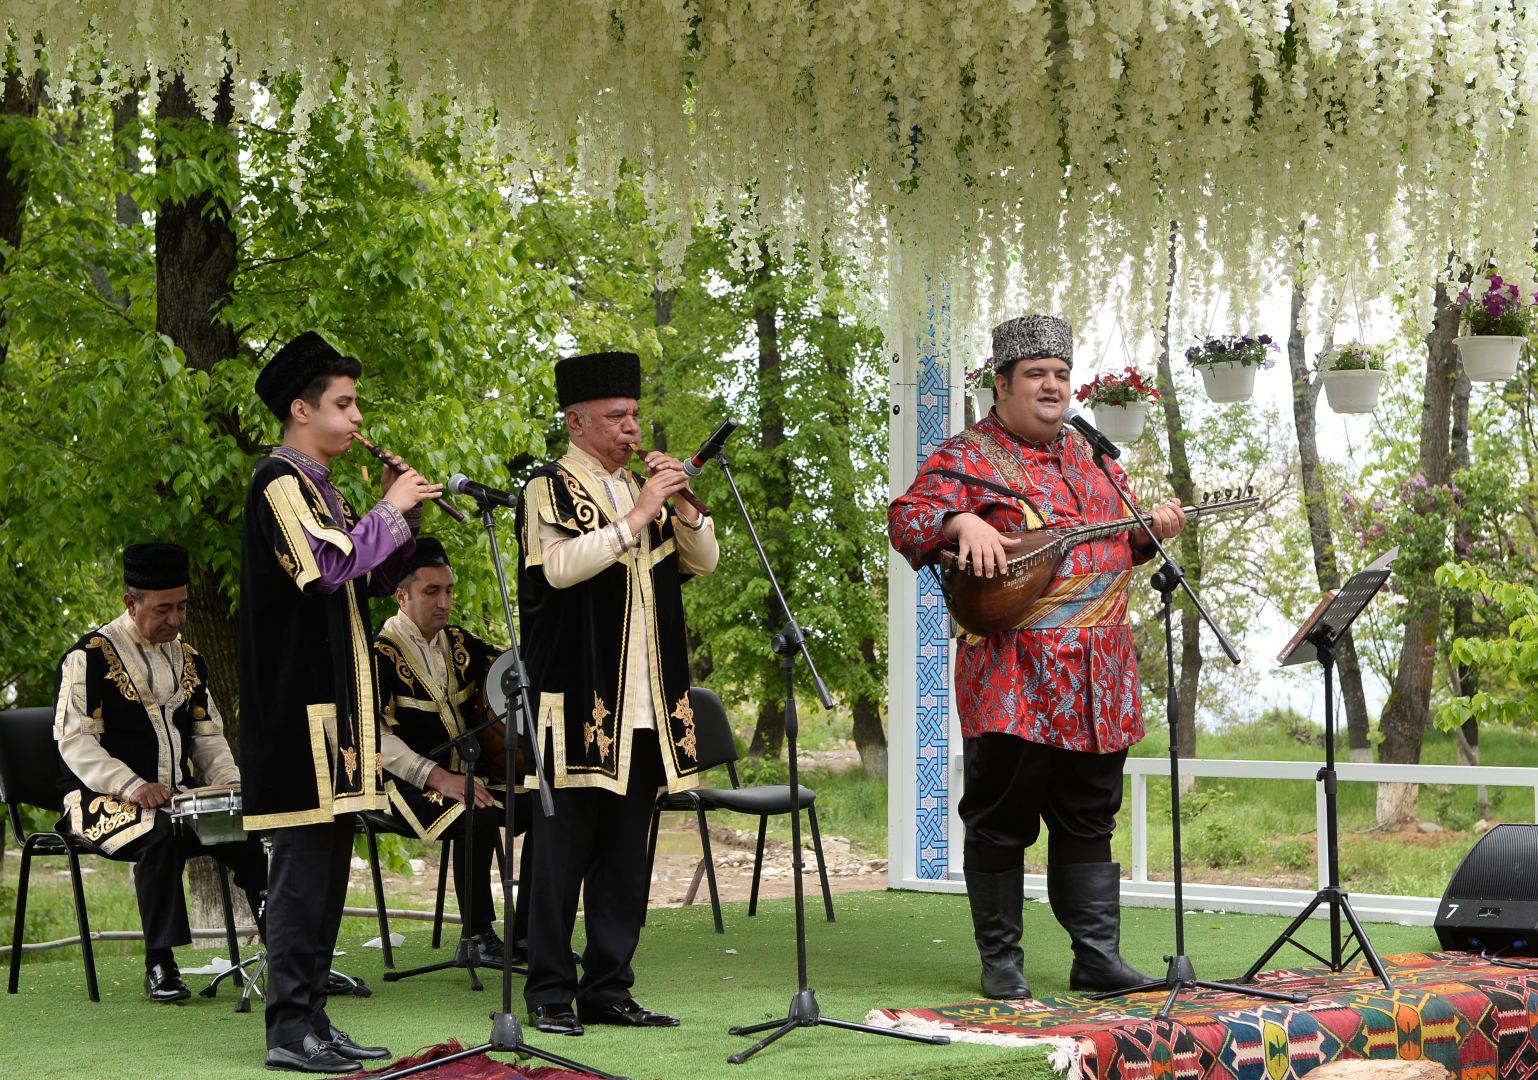 В Шуше начался Международный музыкальный фестиваль "Харыбюльбюль" (ФОТО)